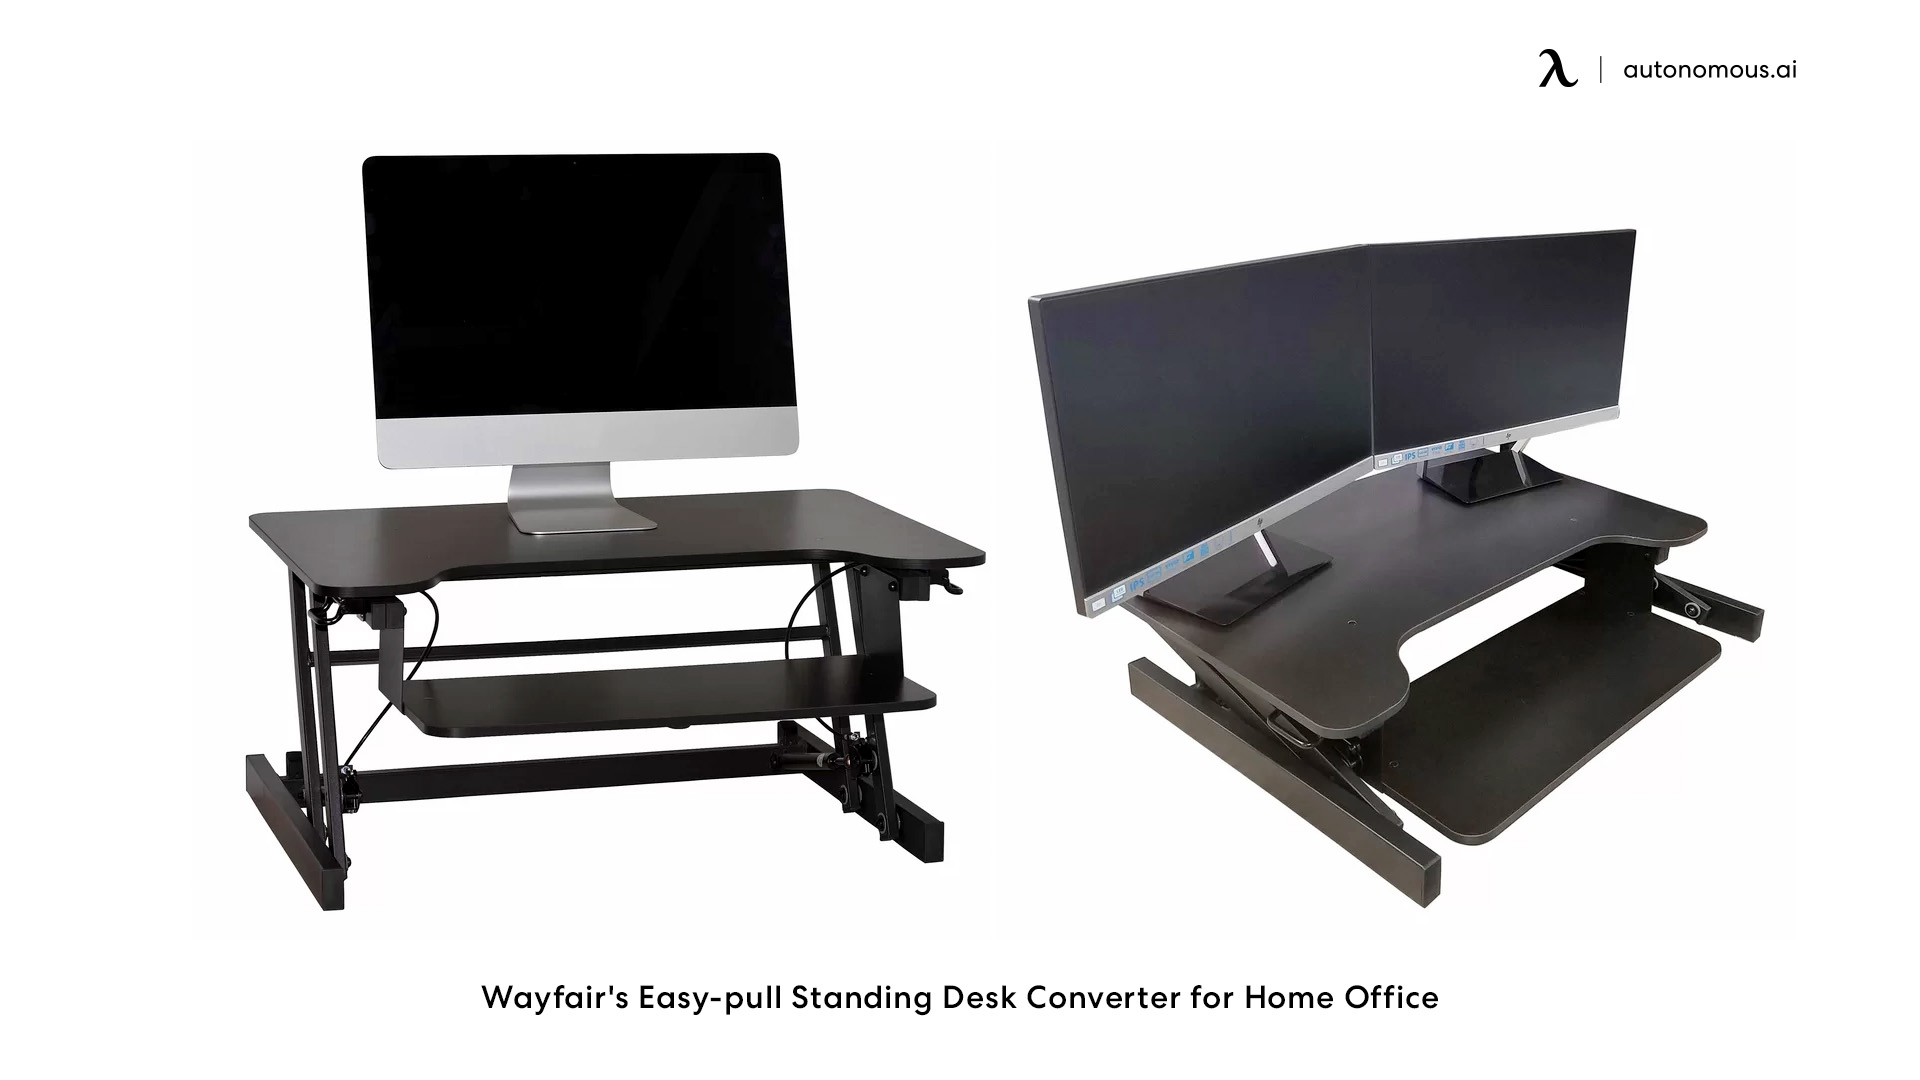 Wayfair's Easy-pull Standing Desk Converter for Home Office